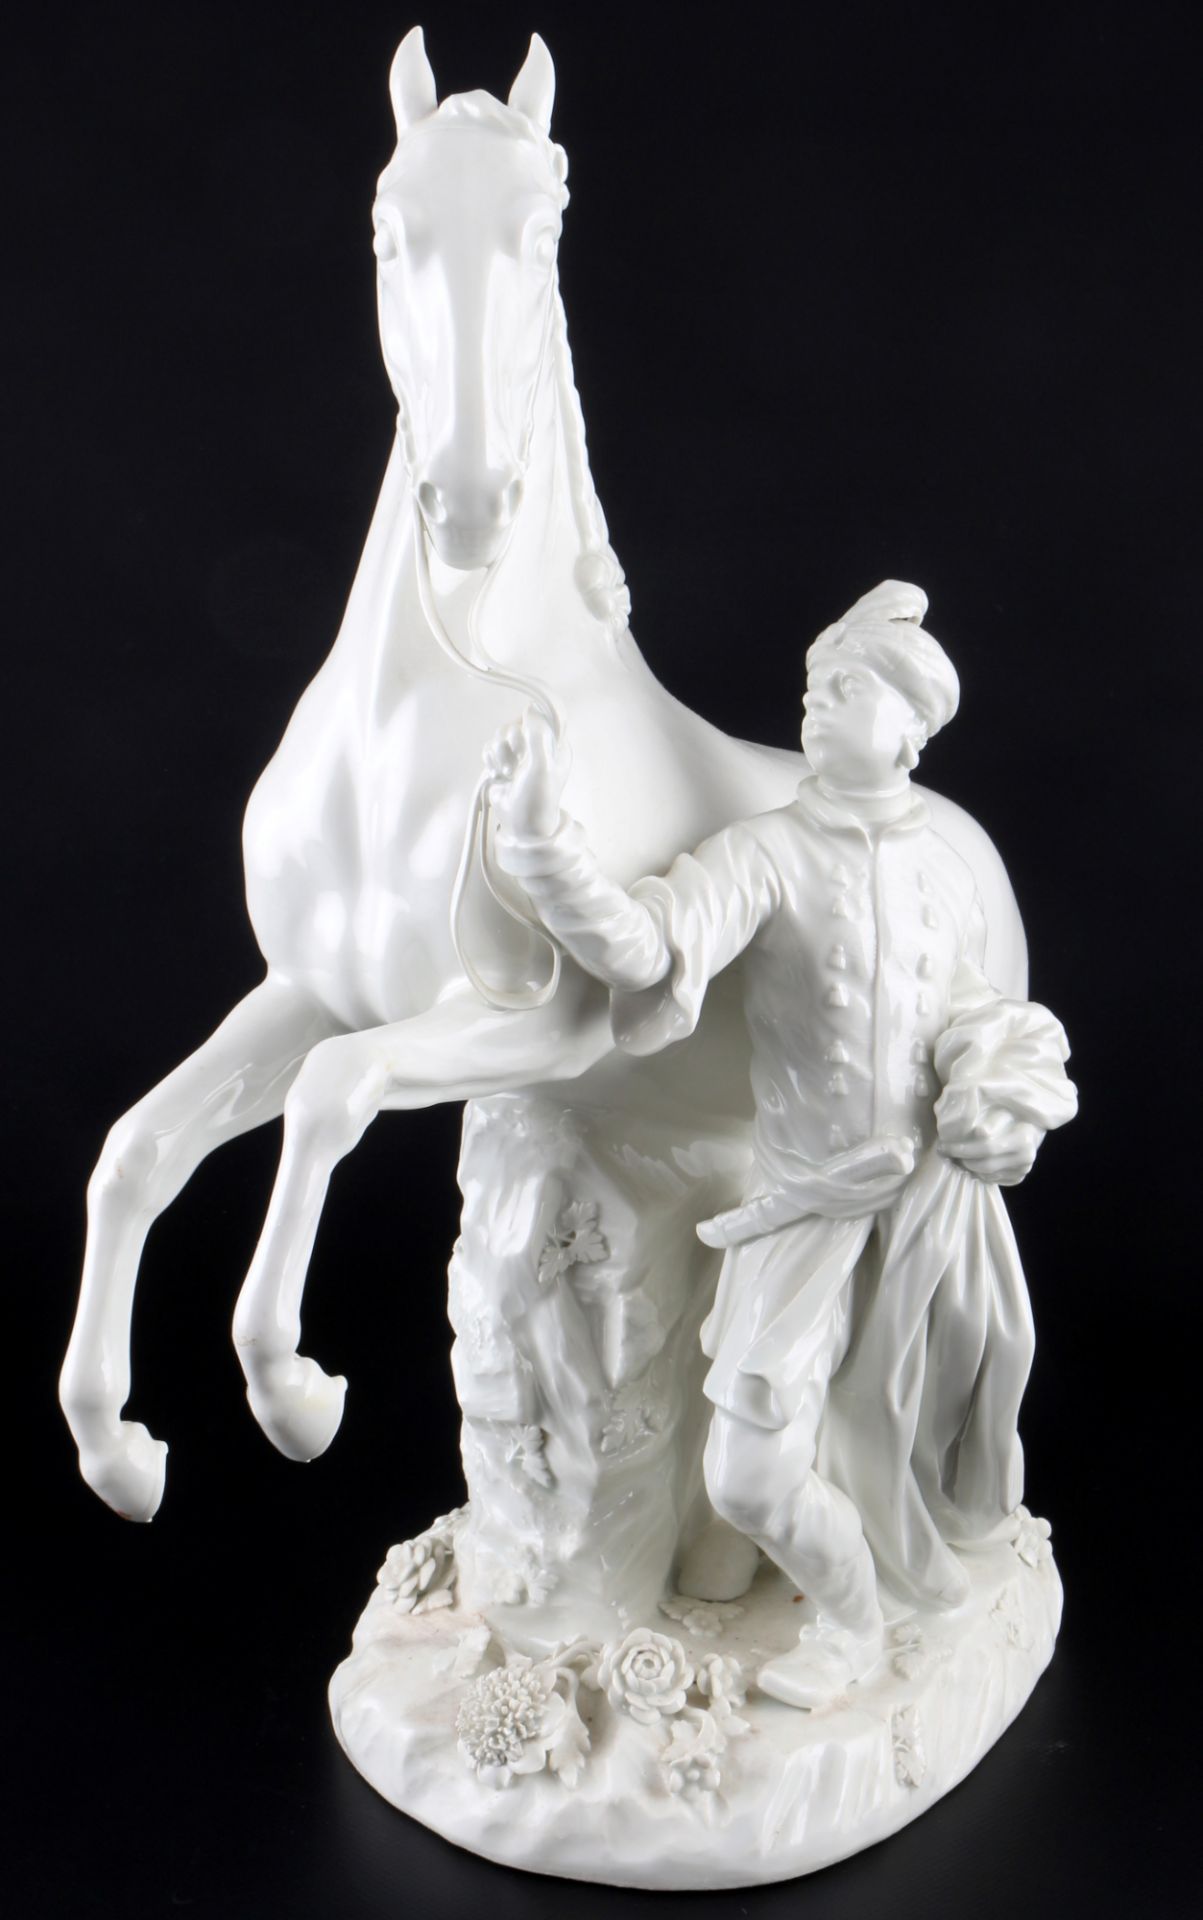 Meissen Mohr mit Schimmel, blackamoor with white horse, - Image 2 of 6